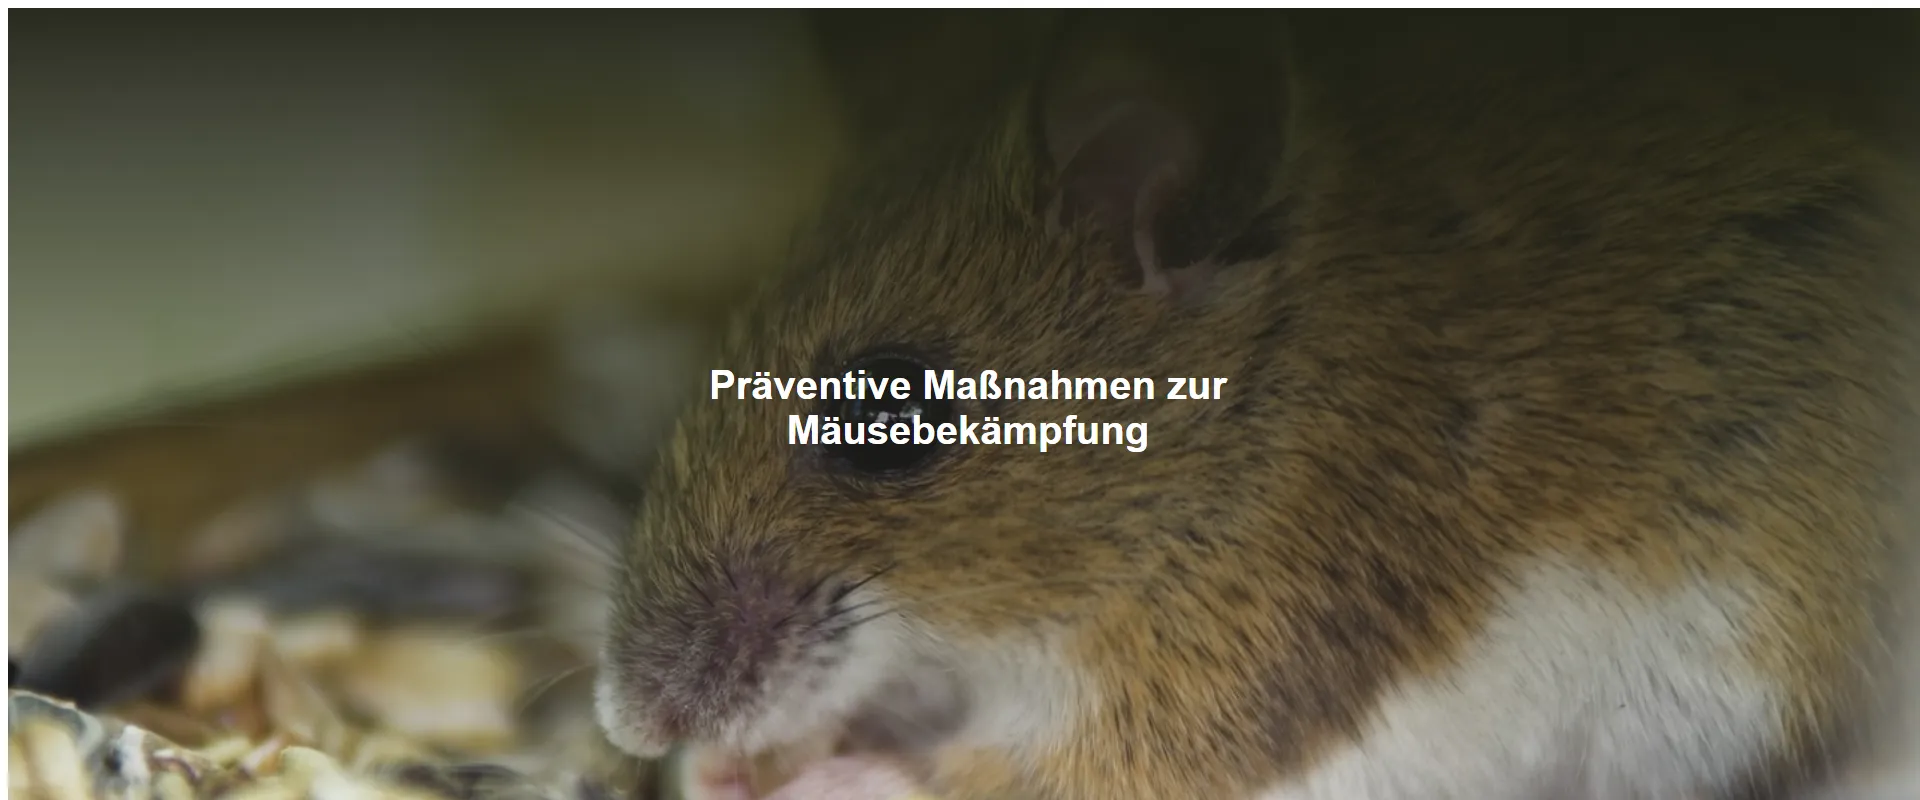 Präventive Maßnahmen zur Mäusebekämpfung